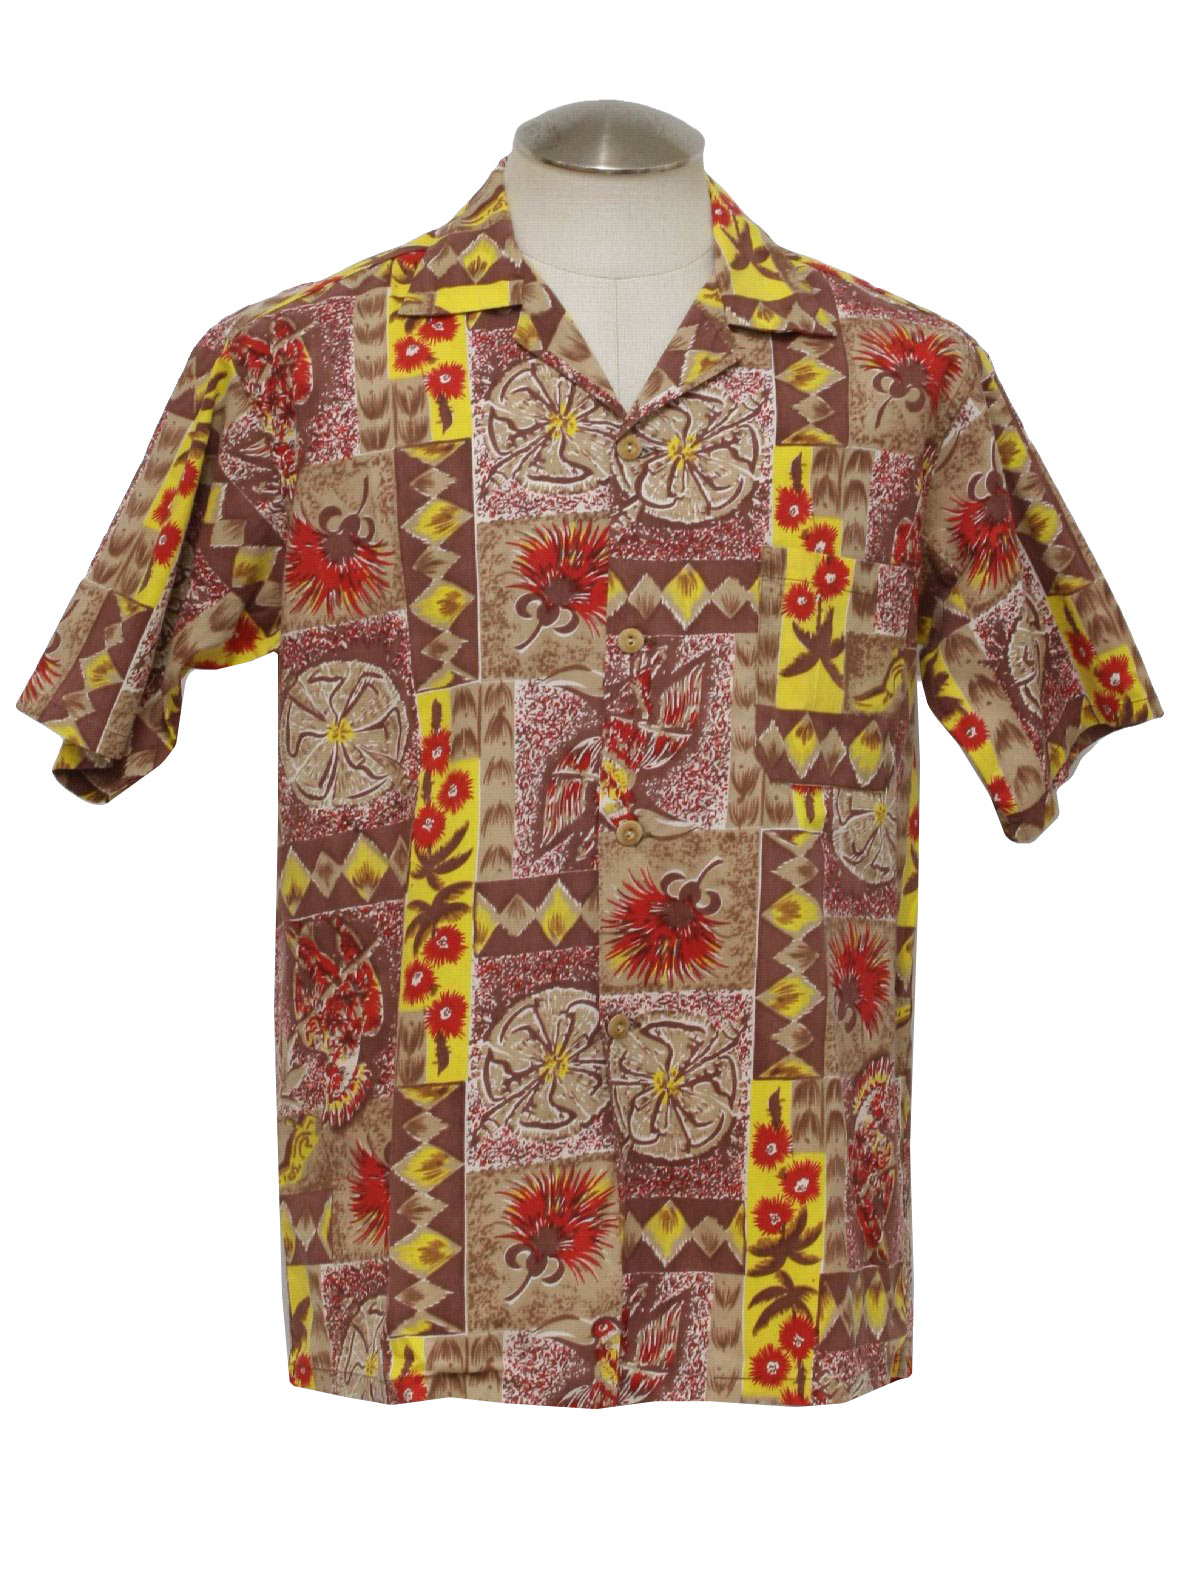 Retro 1960's Hawaiian Shirt (Hookano) : Early60s -Hookano- Mens white ...